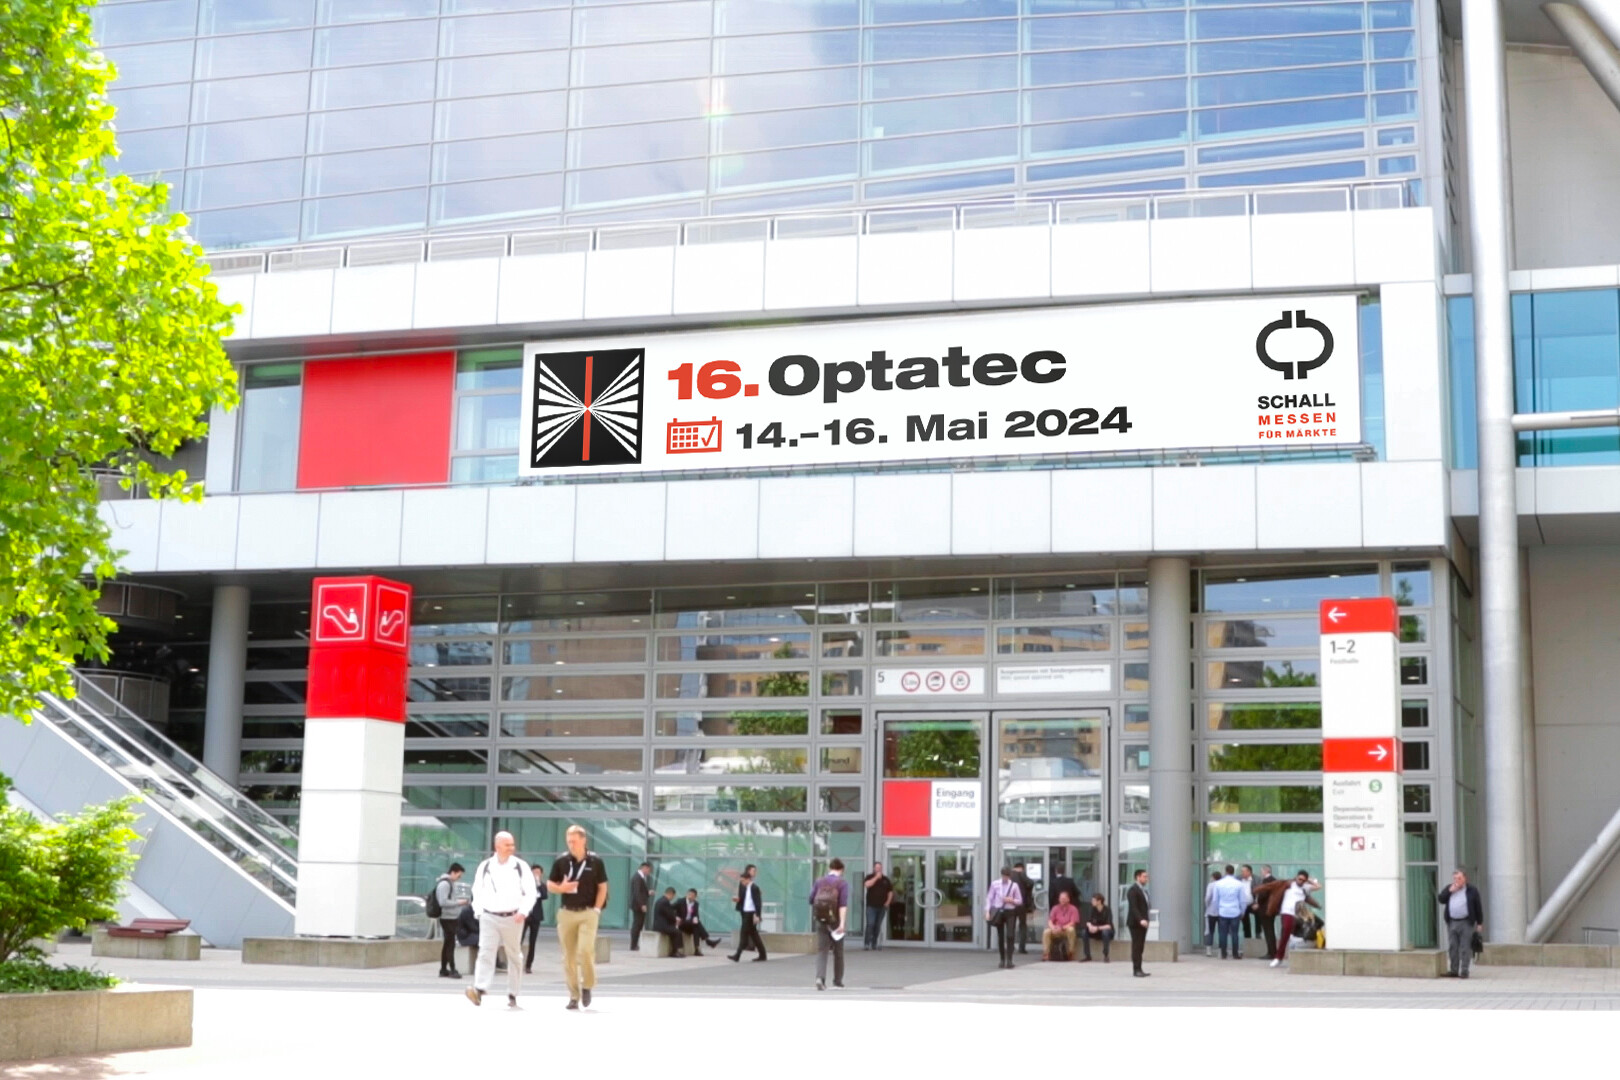 Optatec Internationale Fachmesse für optische Technologien, Komponenten und Systeme Optatec Eingang Frankfurt Date 2024 mit schall uai